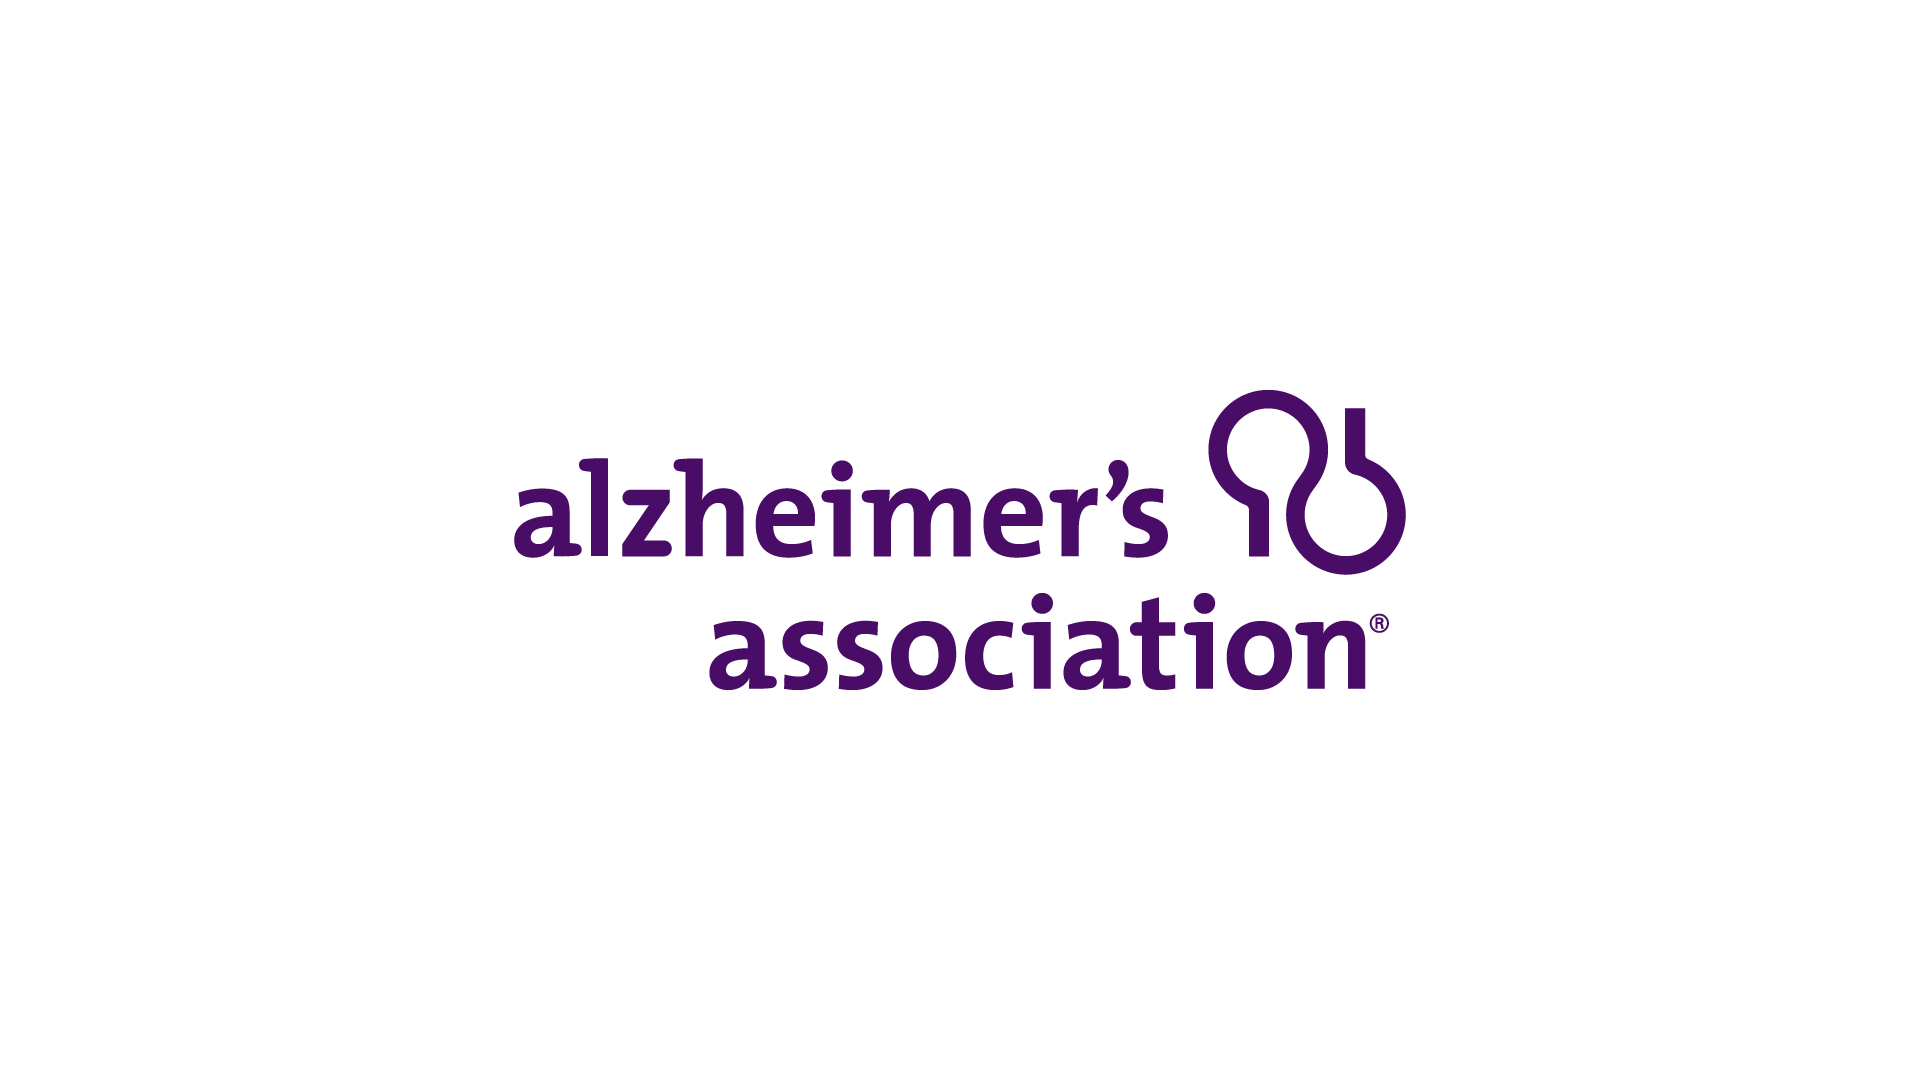 The Alzheimer’s Association